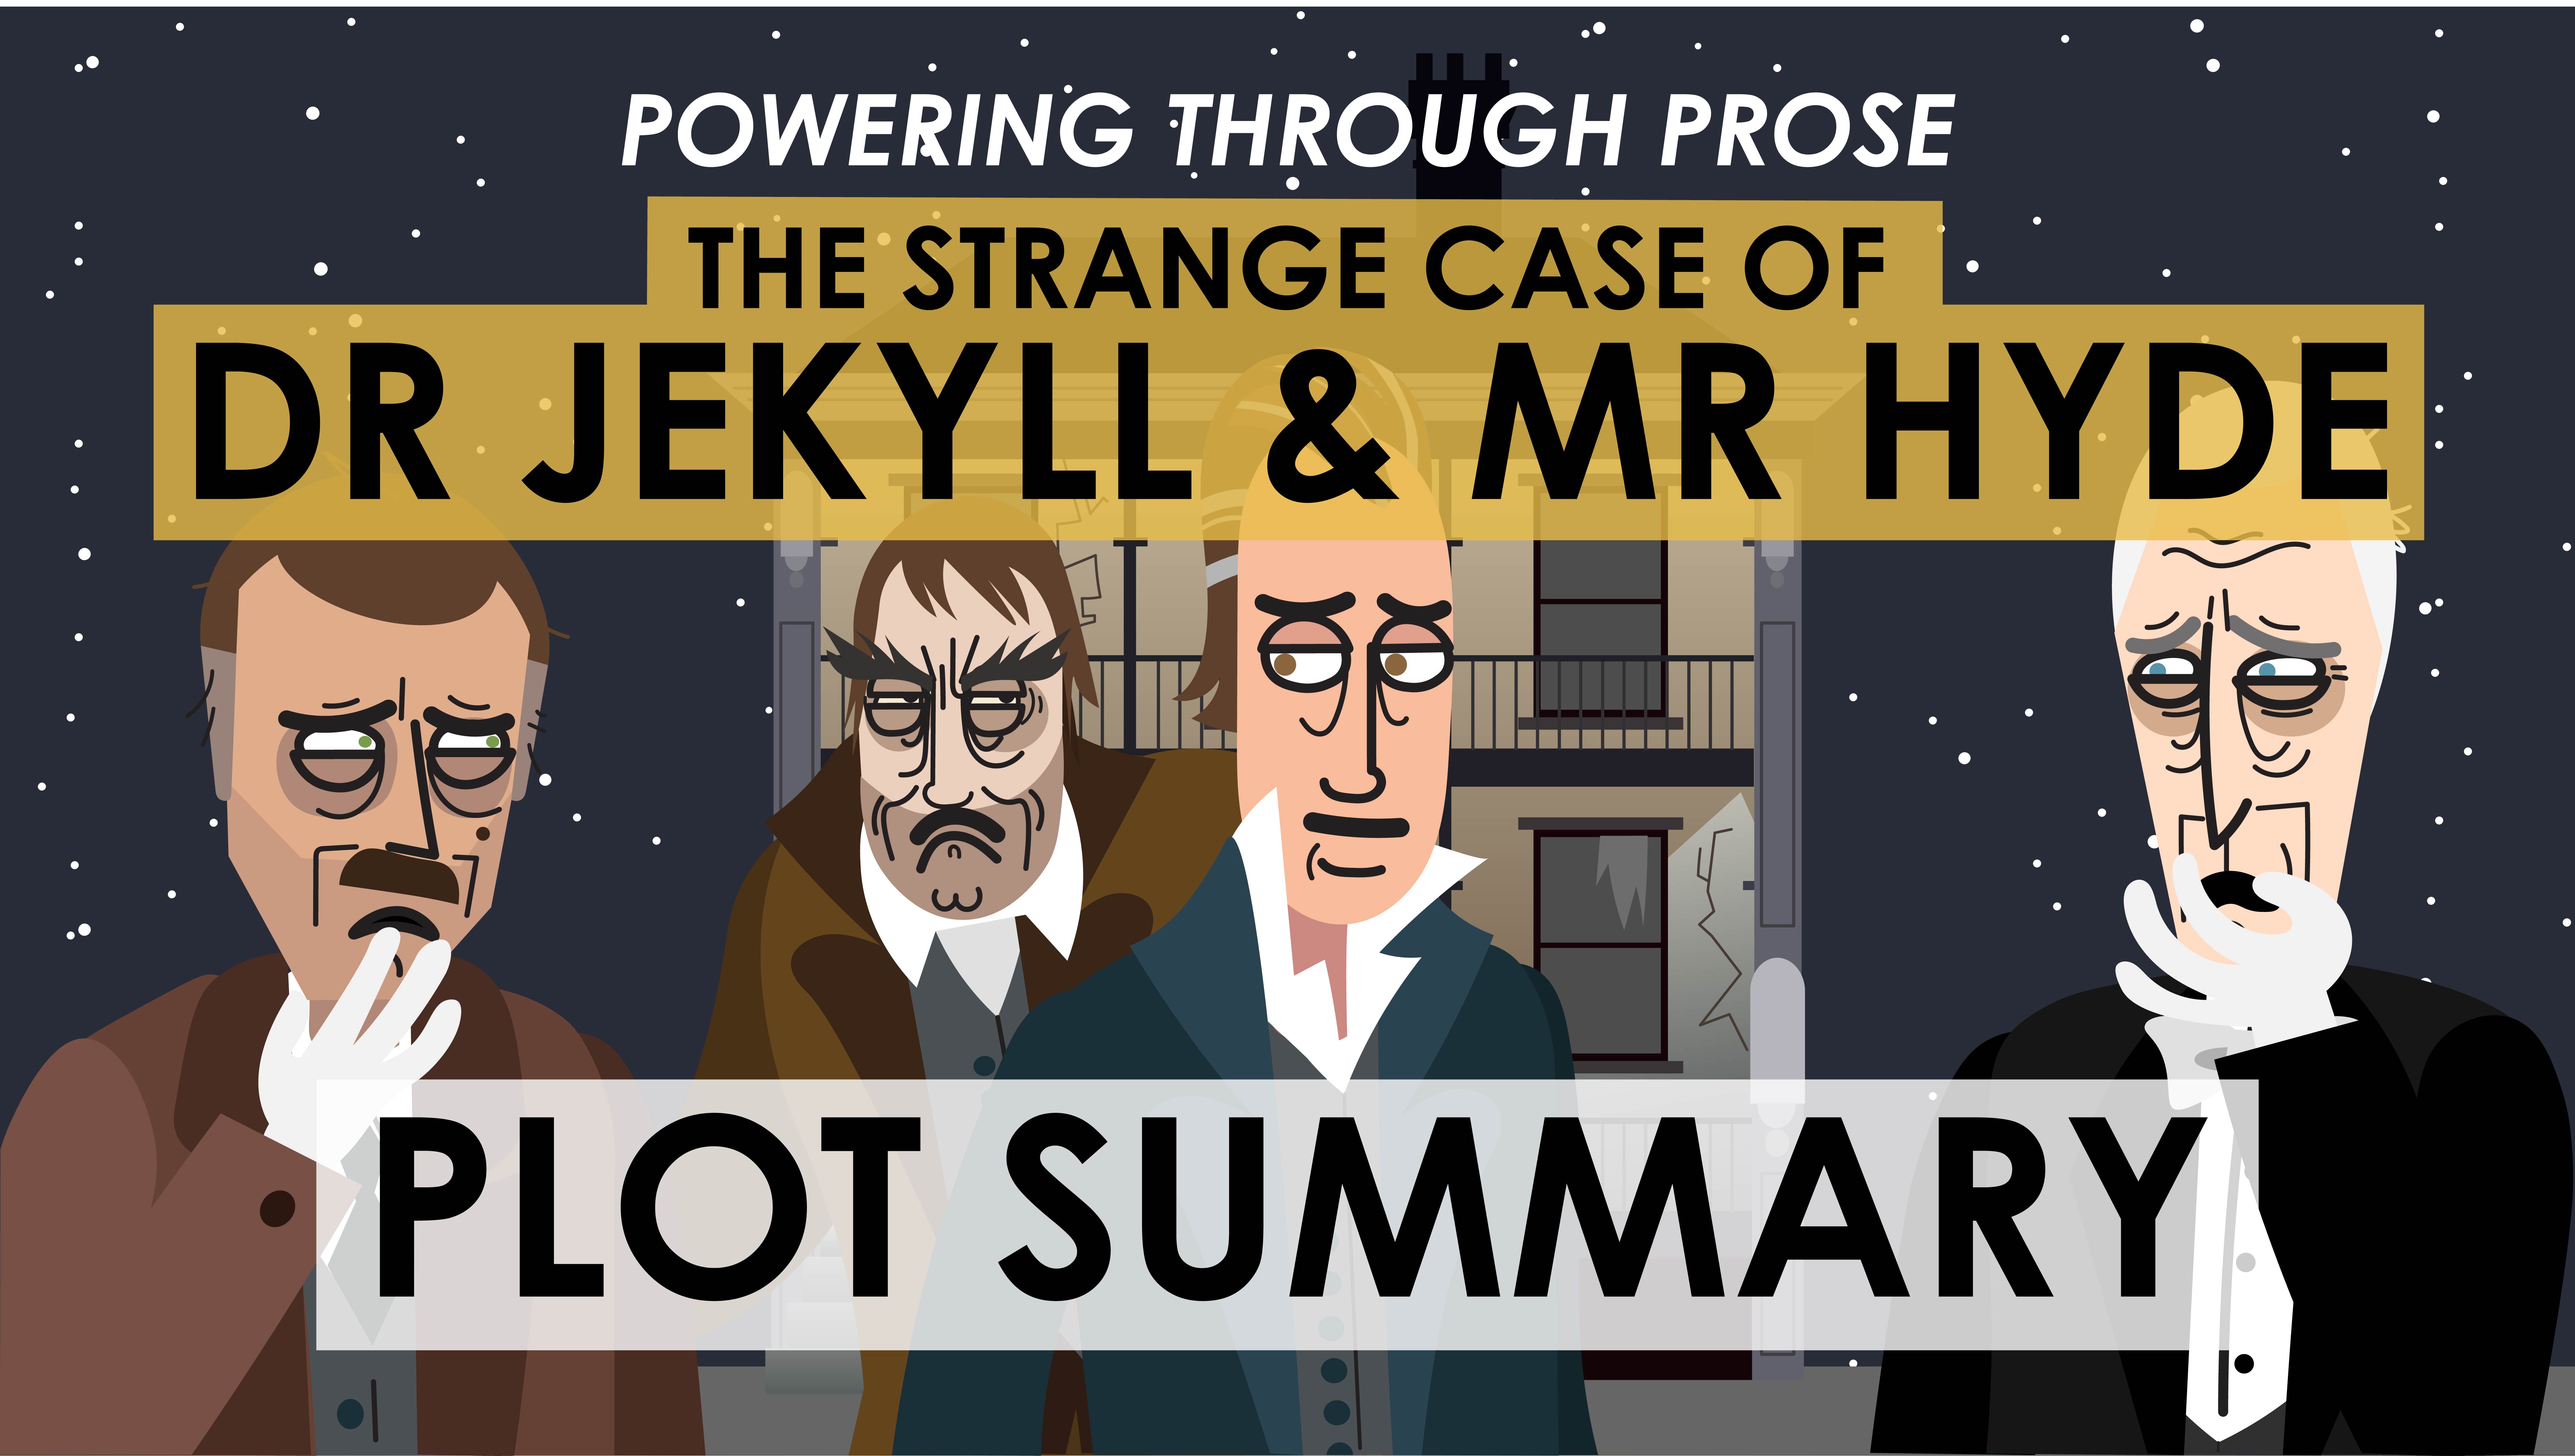 The Strange Case of Dr Jekyll & Mr Hyde - Robert Louis Stevenson -Plot Summary - Powering Through Prose Series